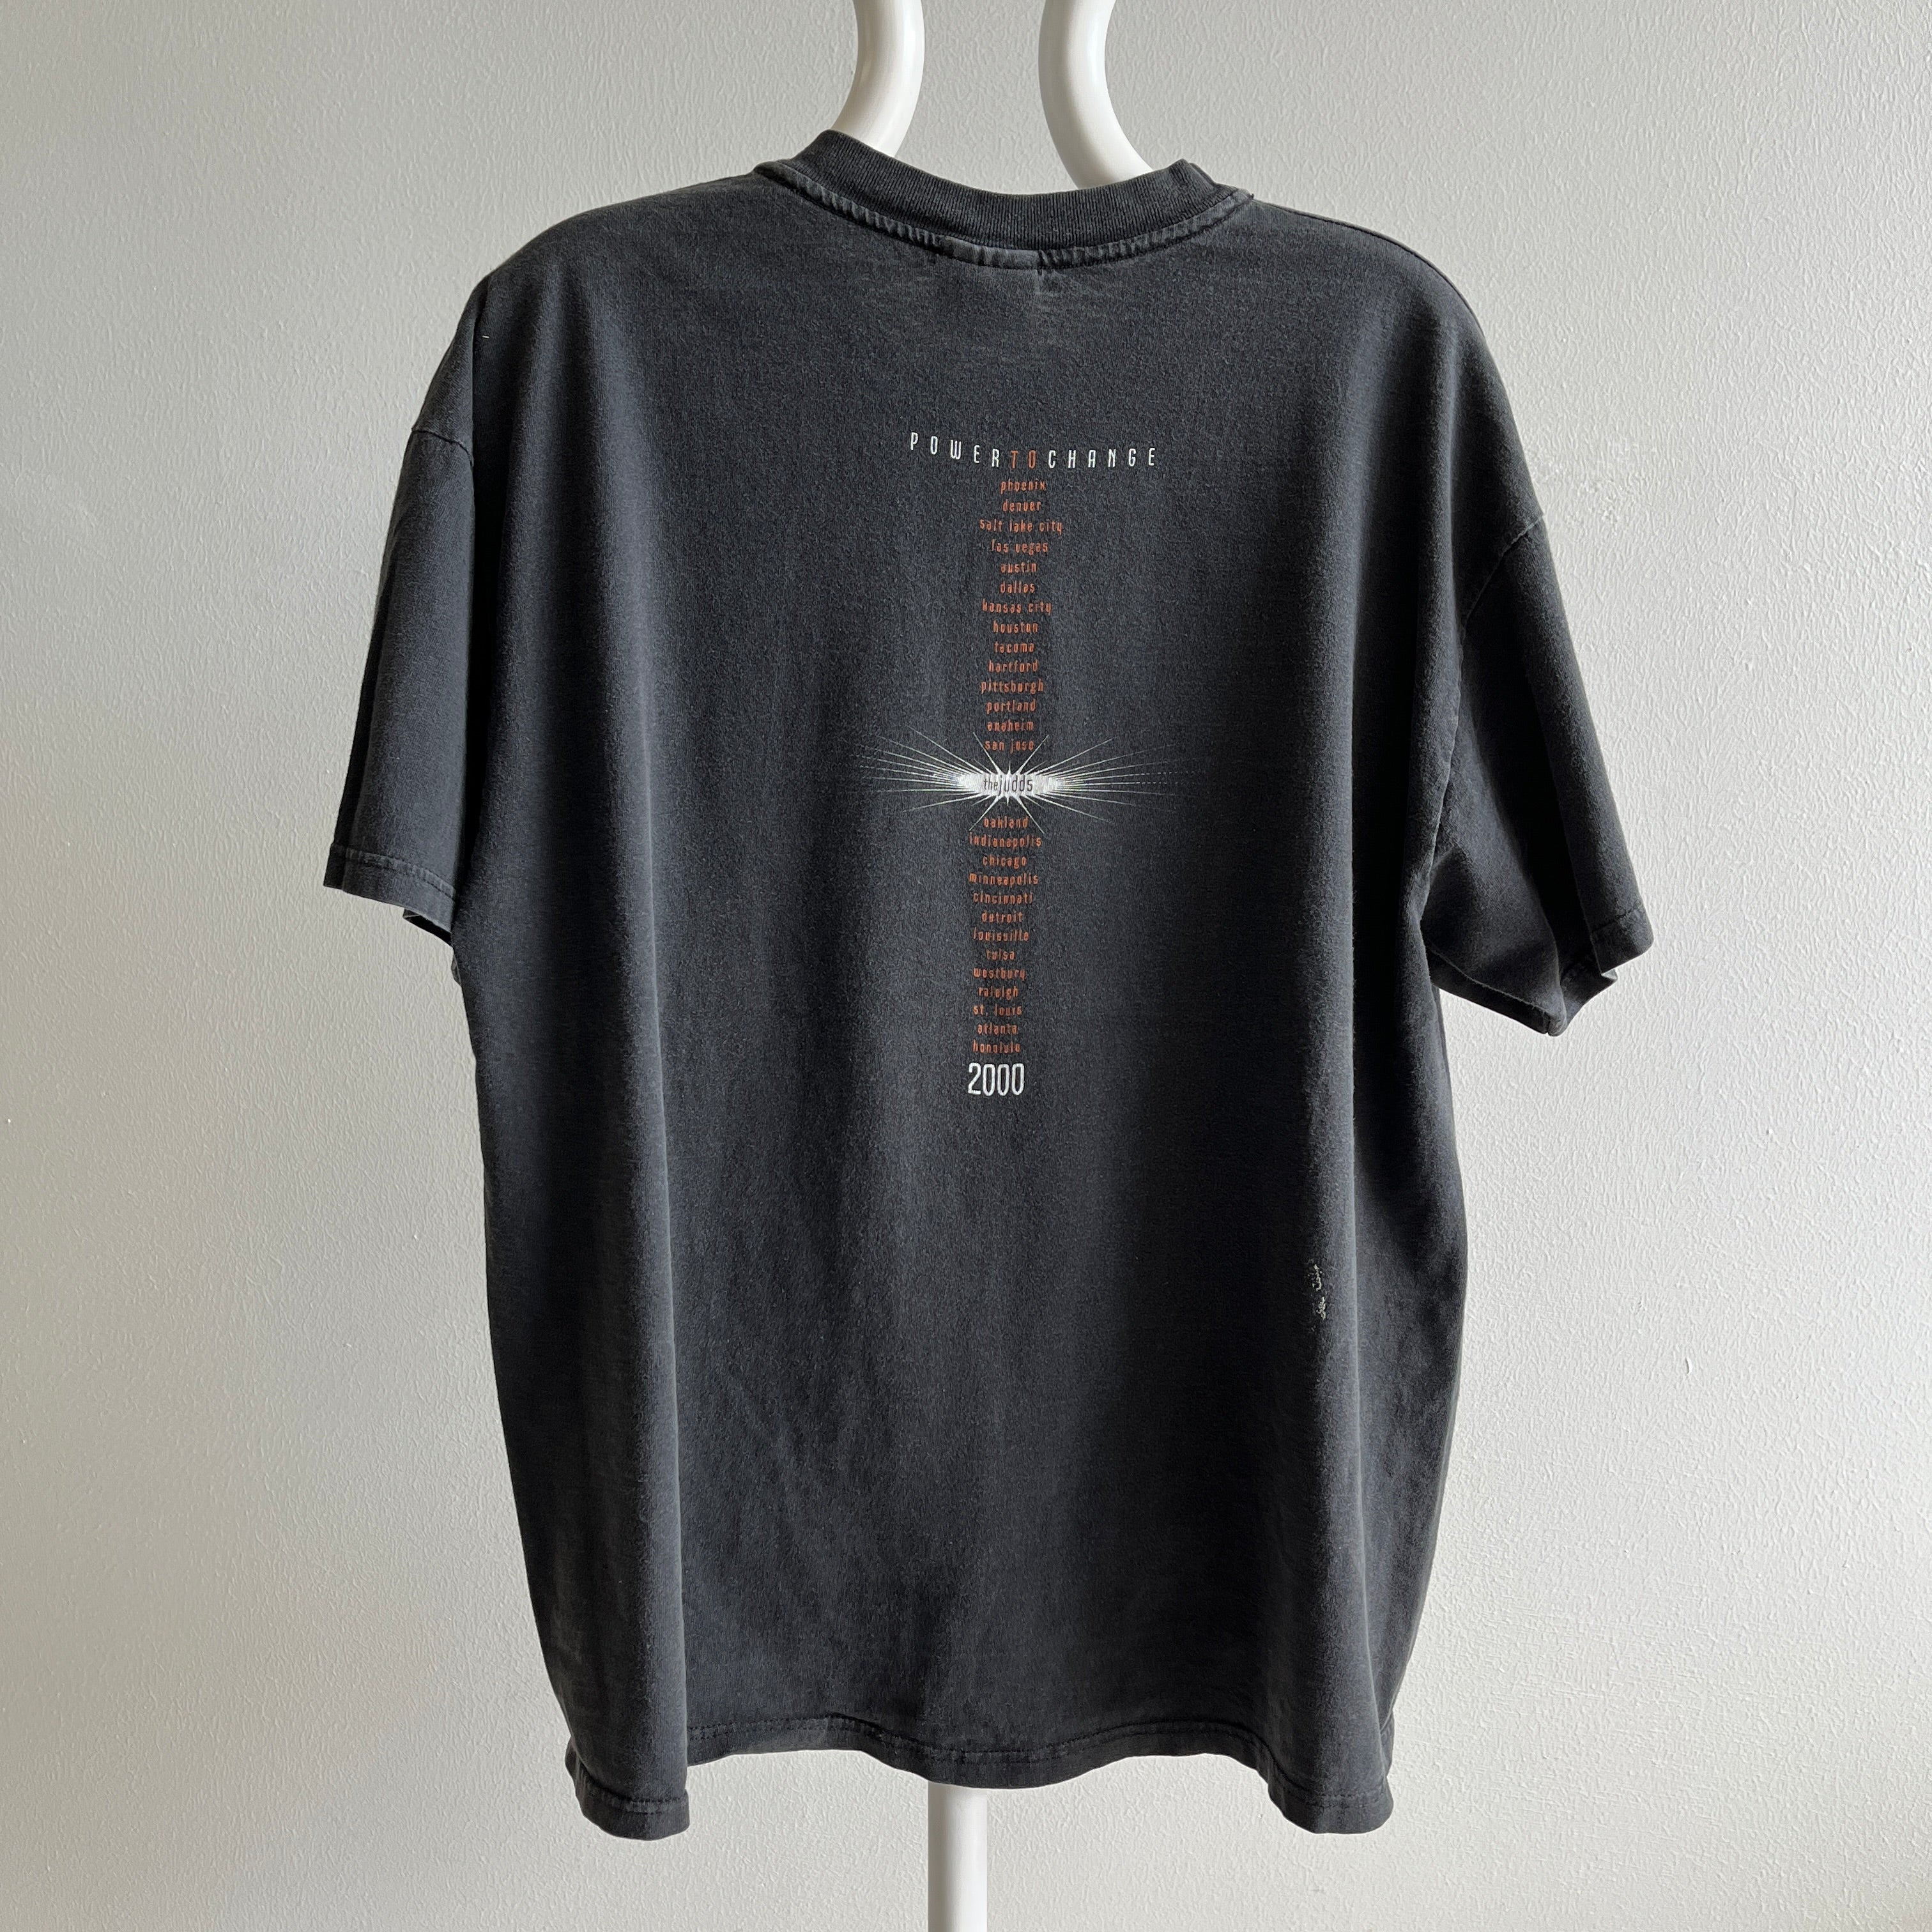 1999 Le T-shirt Judds